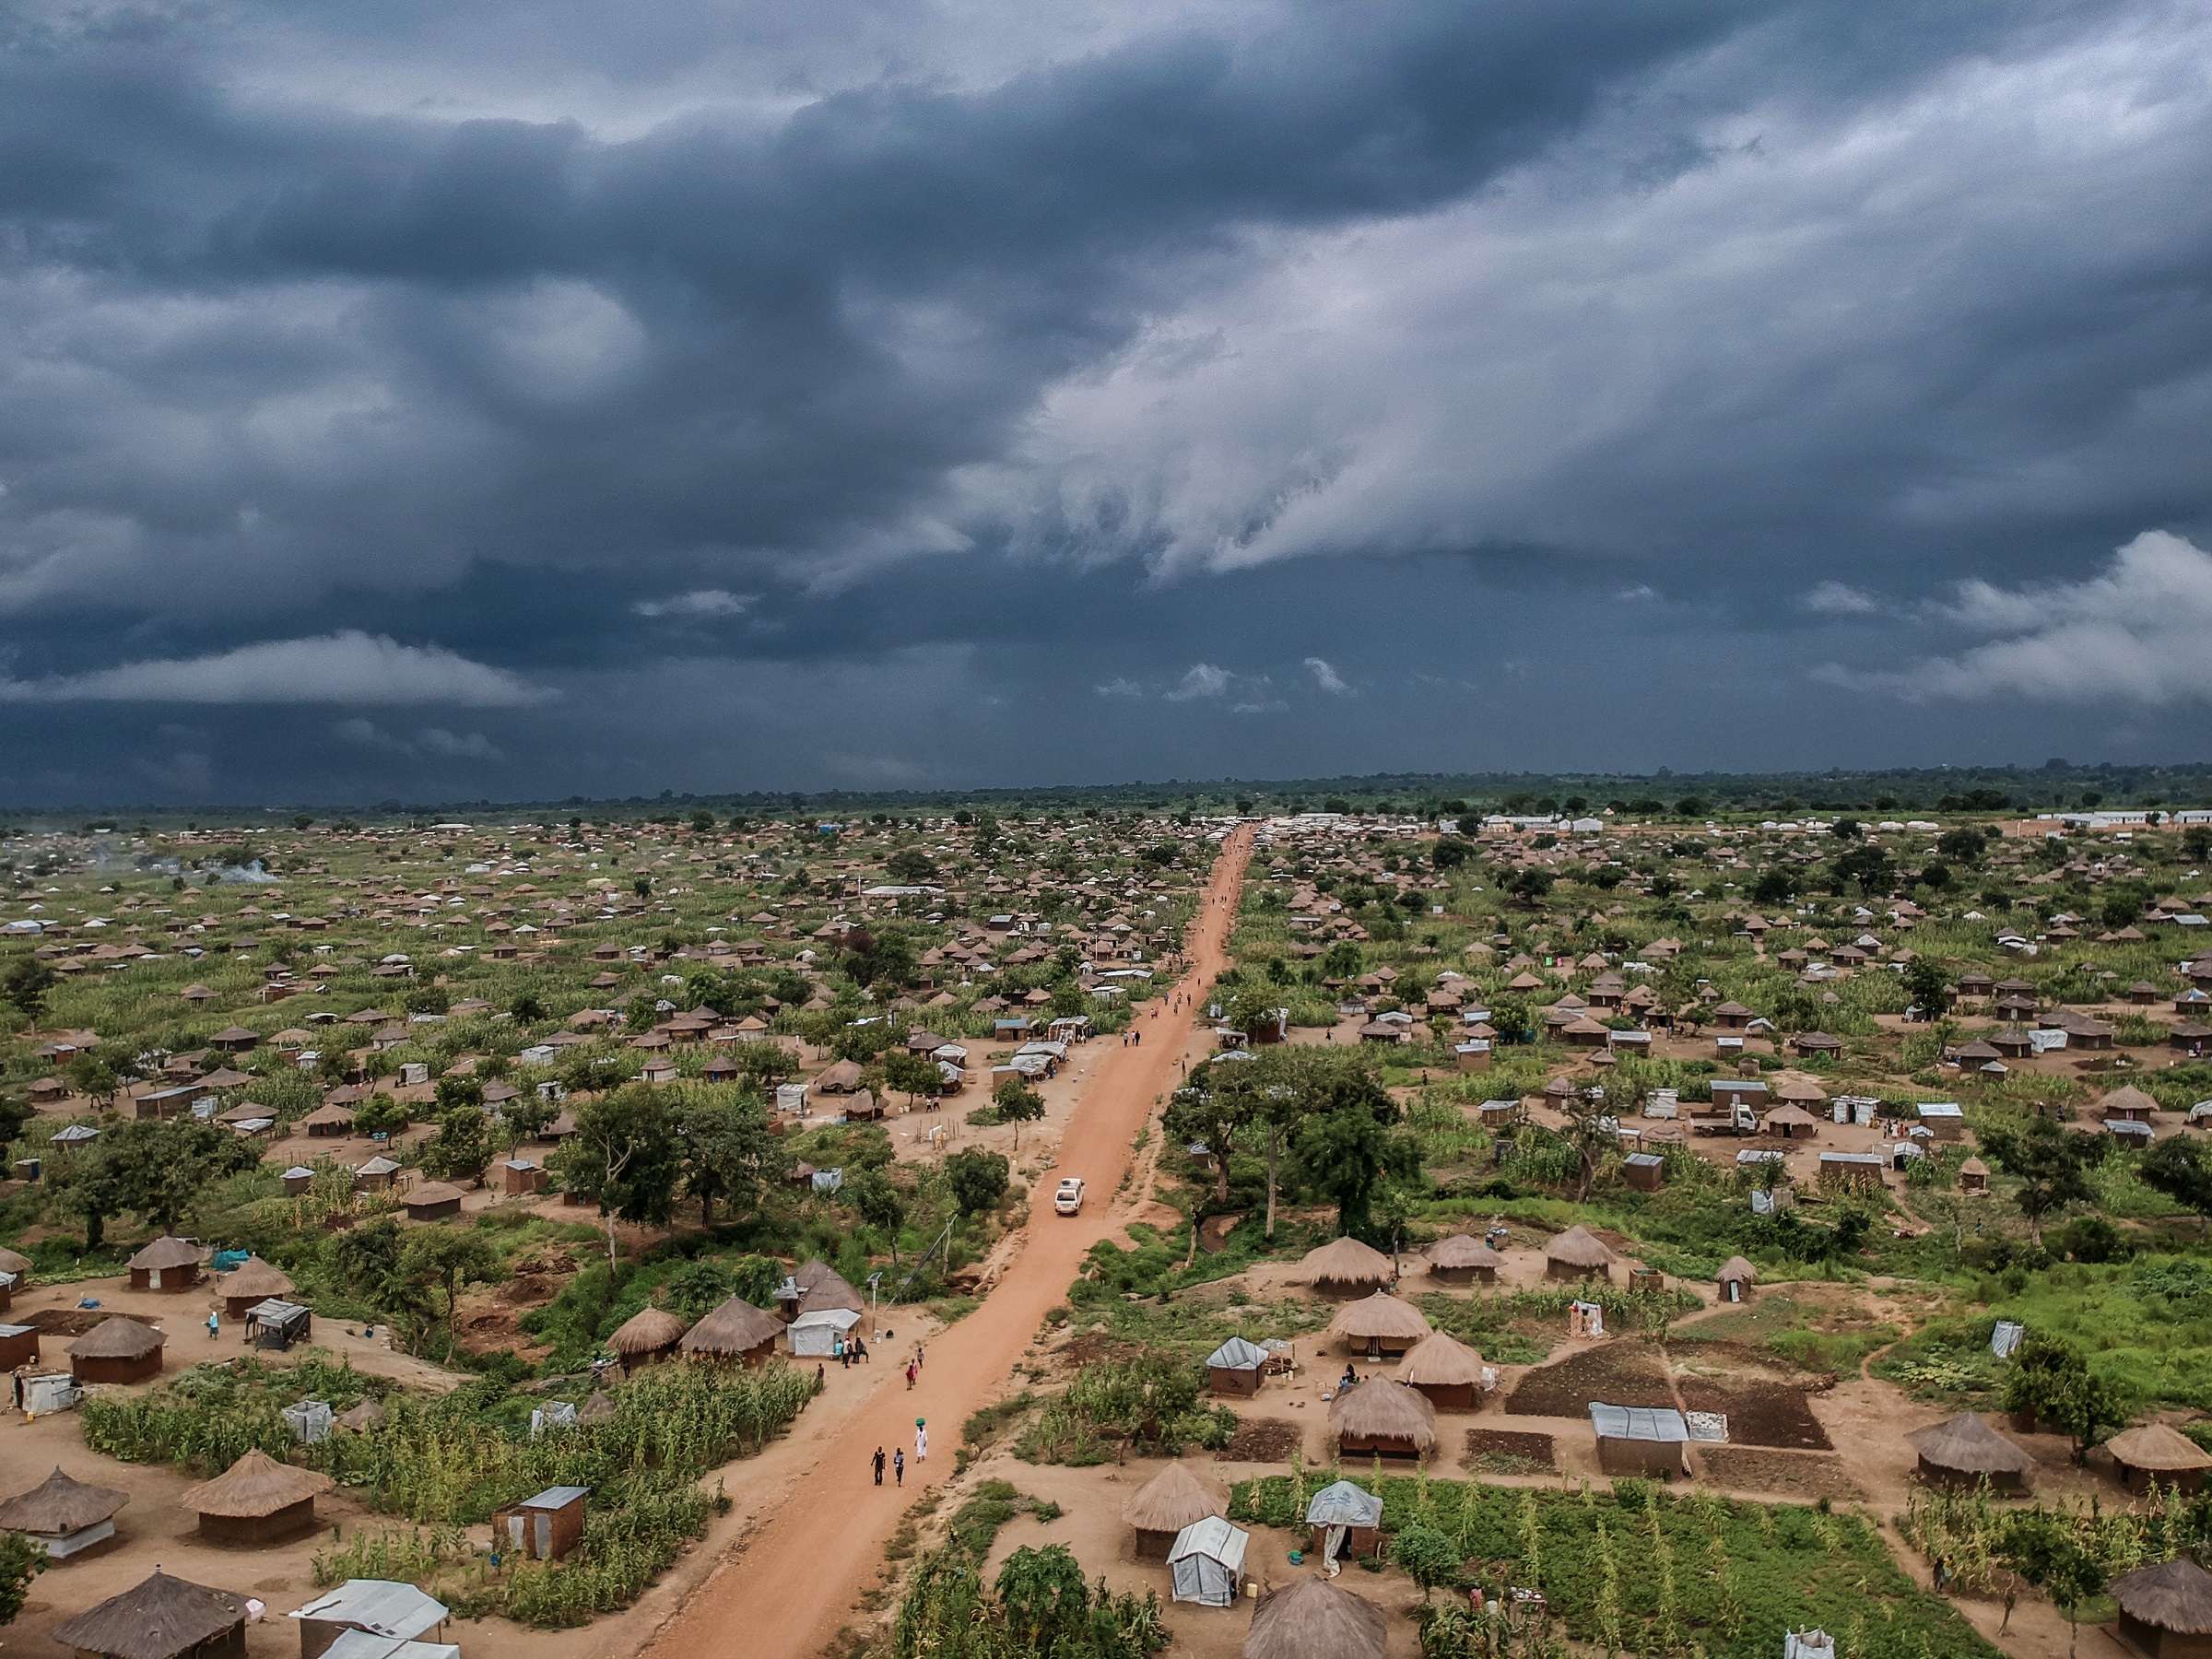 Mørke skyer over Bidibidi i Uganda, en av verdens største flyktningbosettinger